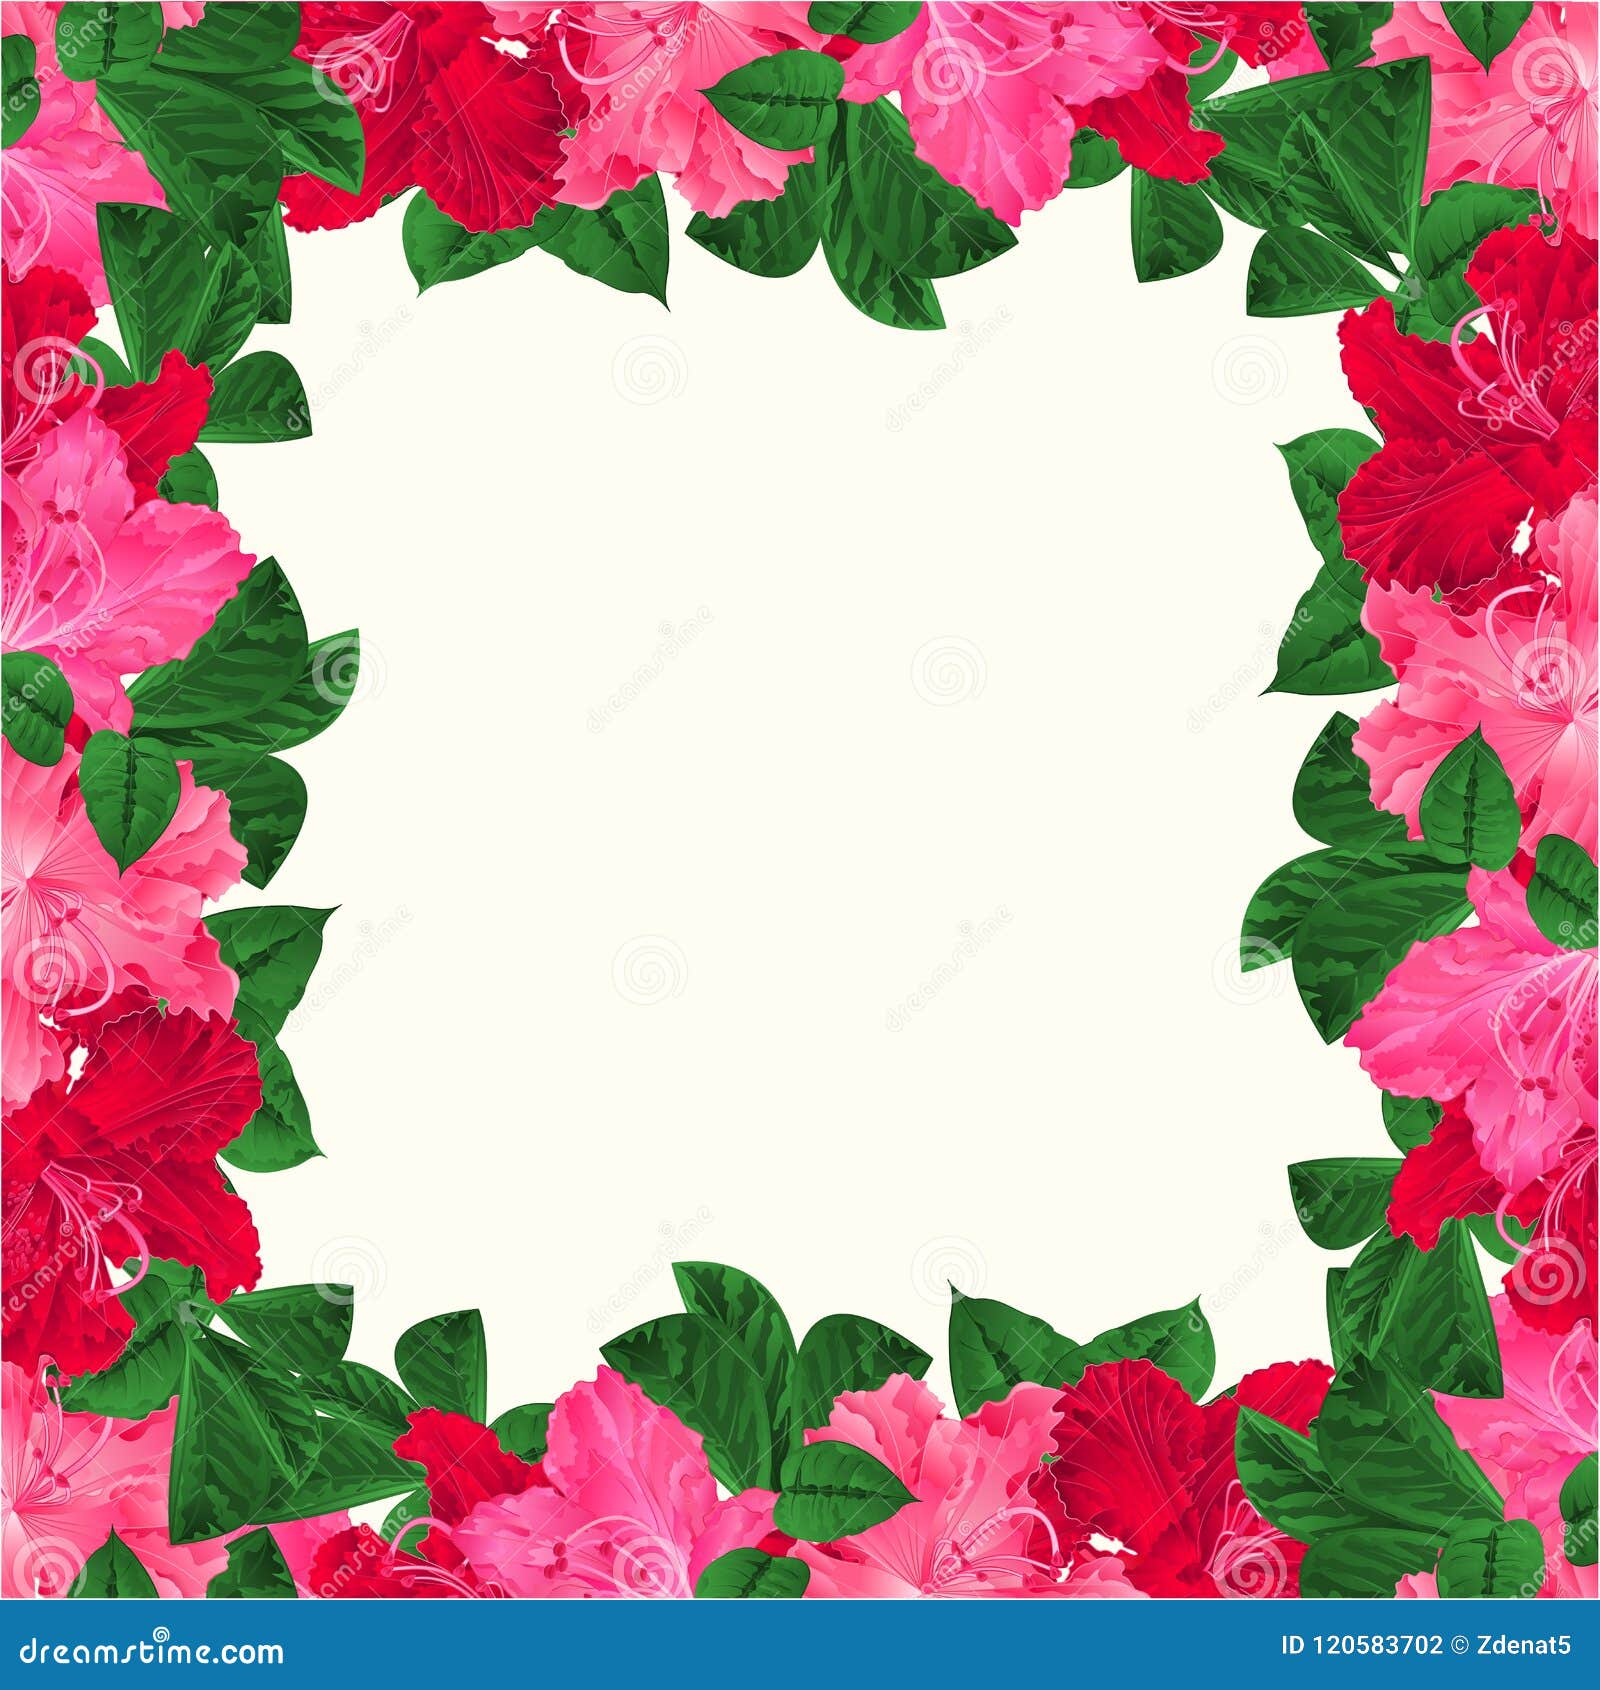 Hoa cúc và những họa tiết hoa tươi tắn sẽ tạo nên không gian rực rỡ, rực rỡ và rực rỡ cho bức ảnh của bạn. Hãy thử sức với hình nền floral frame festive background để tạo nên những bức ảnh lãng mạn đầy sáng tạo!